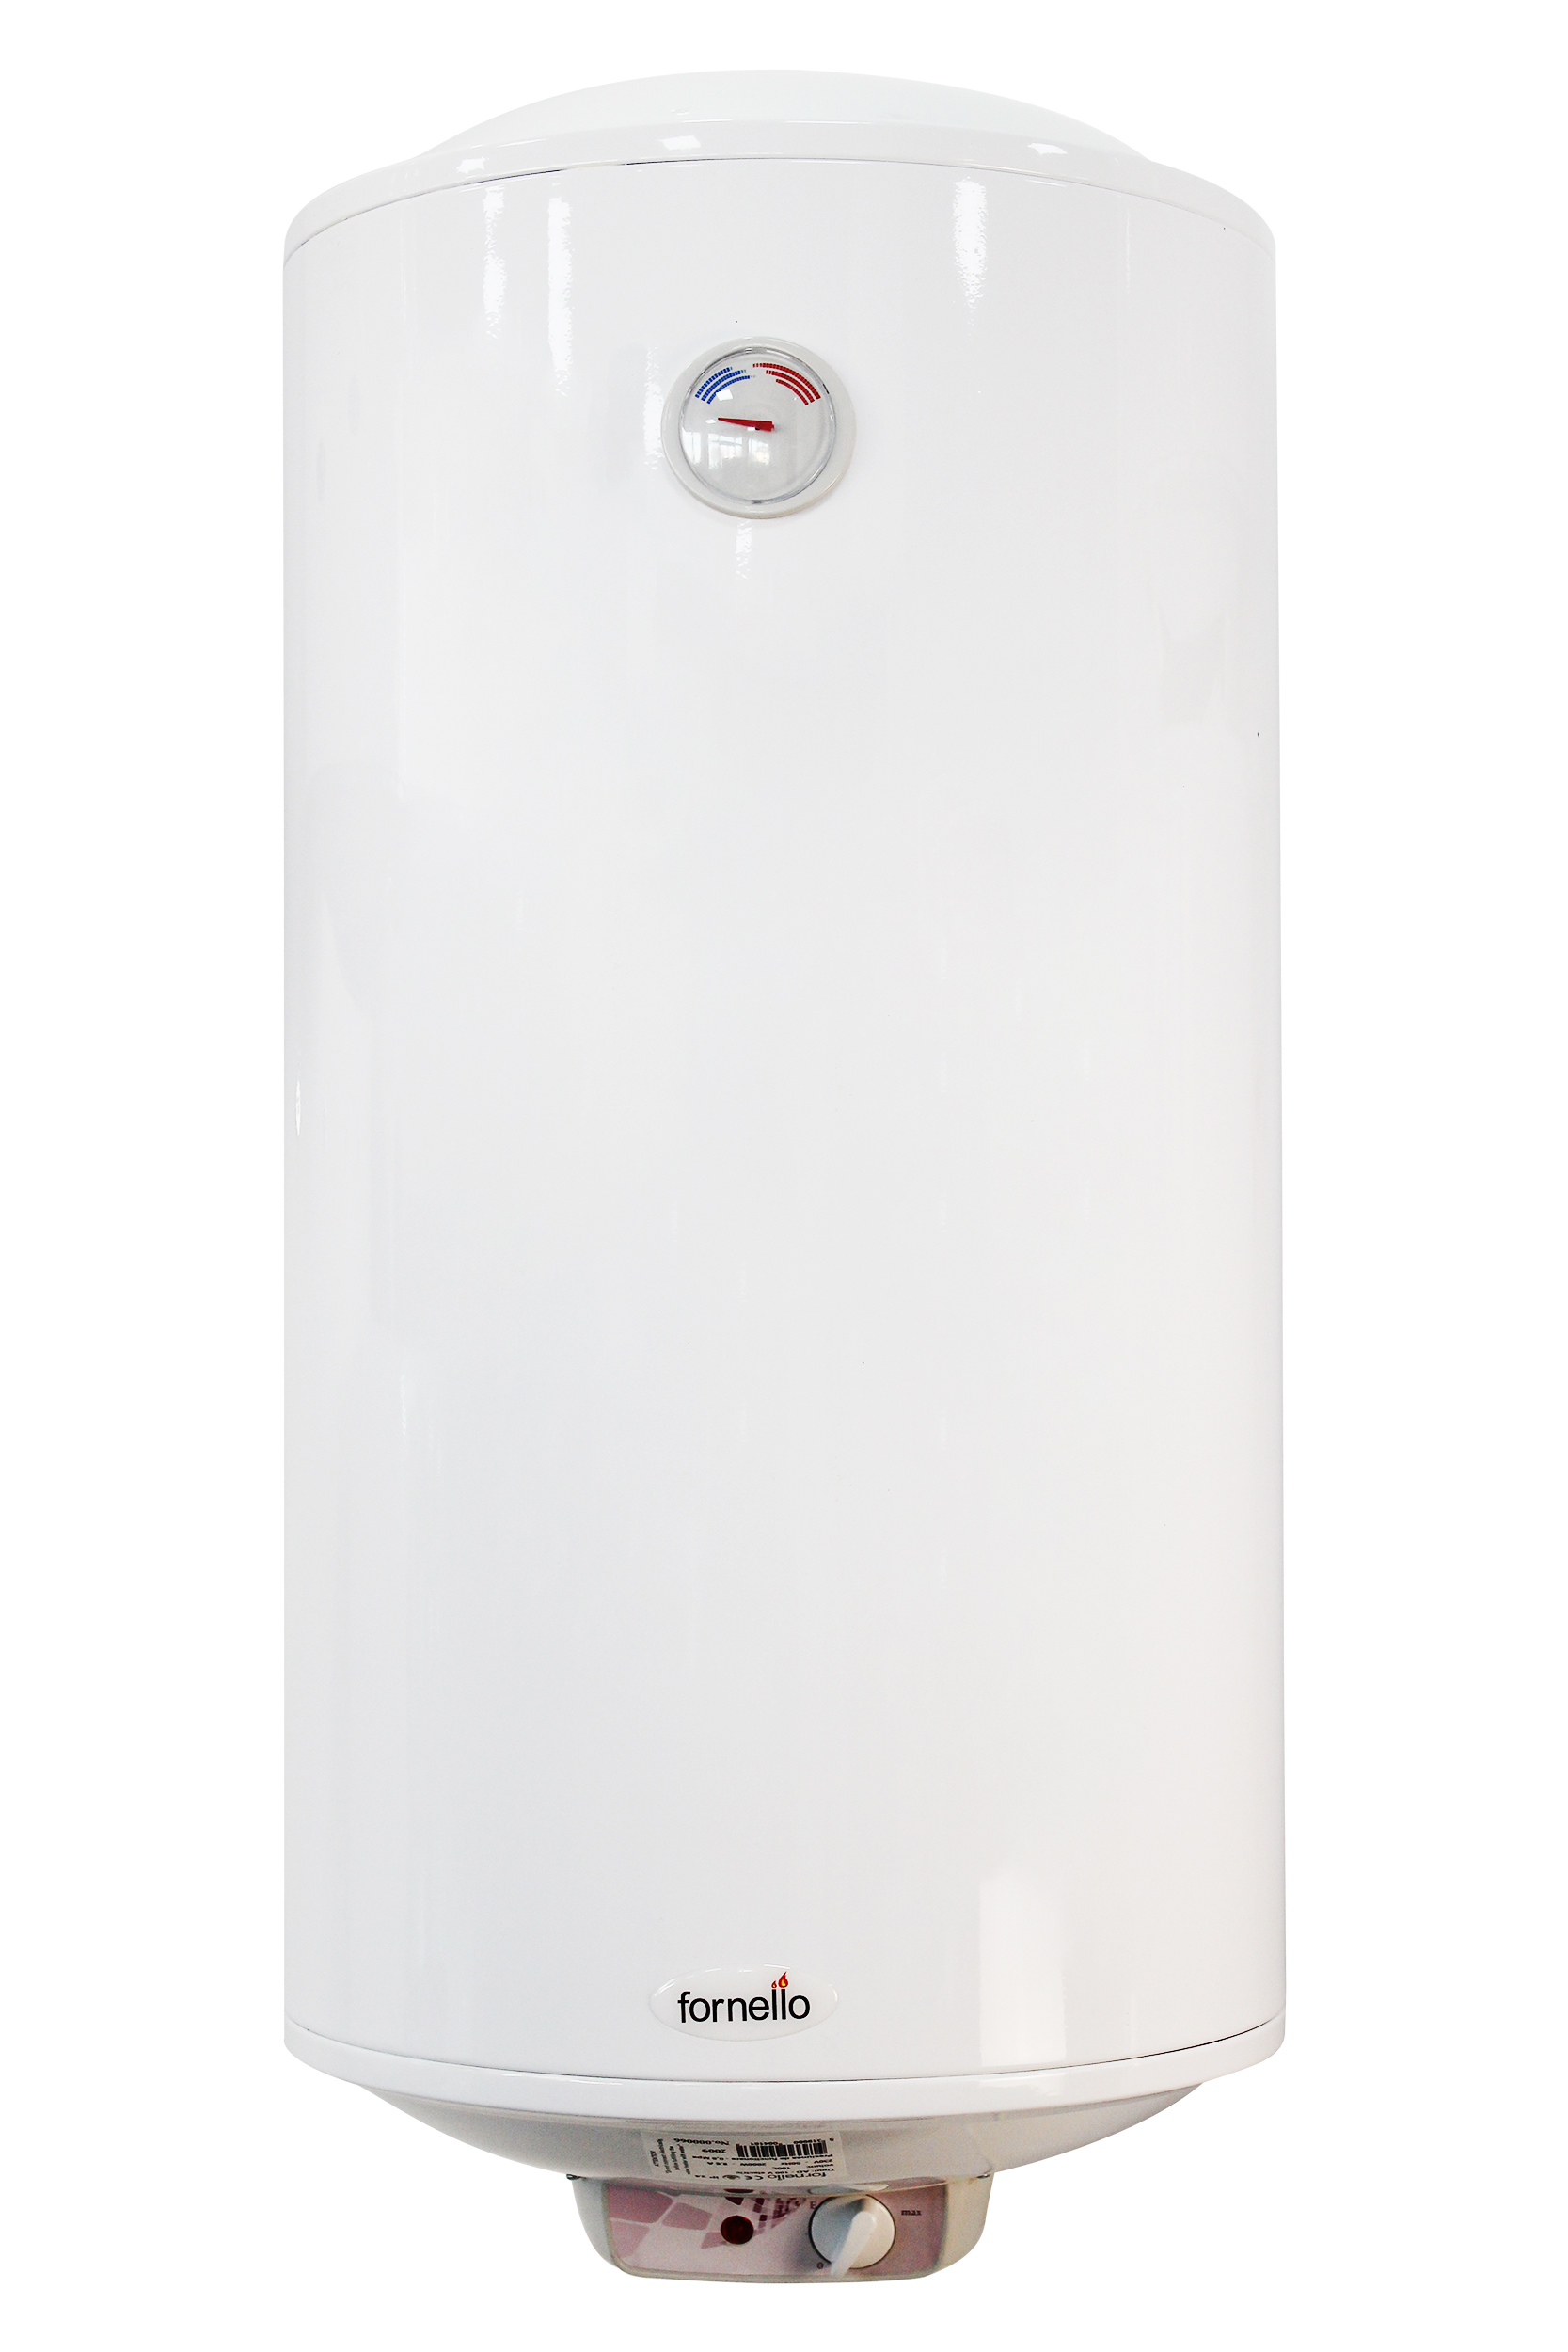 Boiler electric Fornello Titanium Plus 100 litri, 2000 watt, reglaj extern al temperaturii, emailat cu titan Fornello imagine 2022 by aka-home.ro